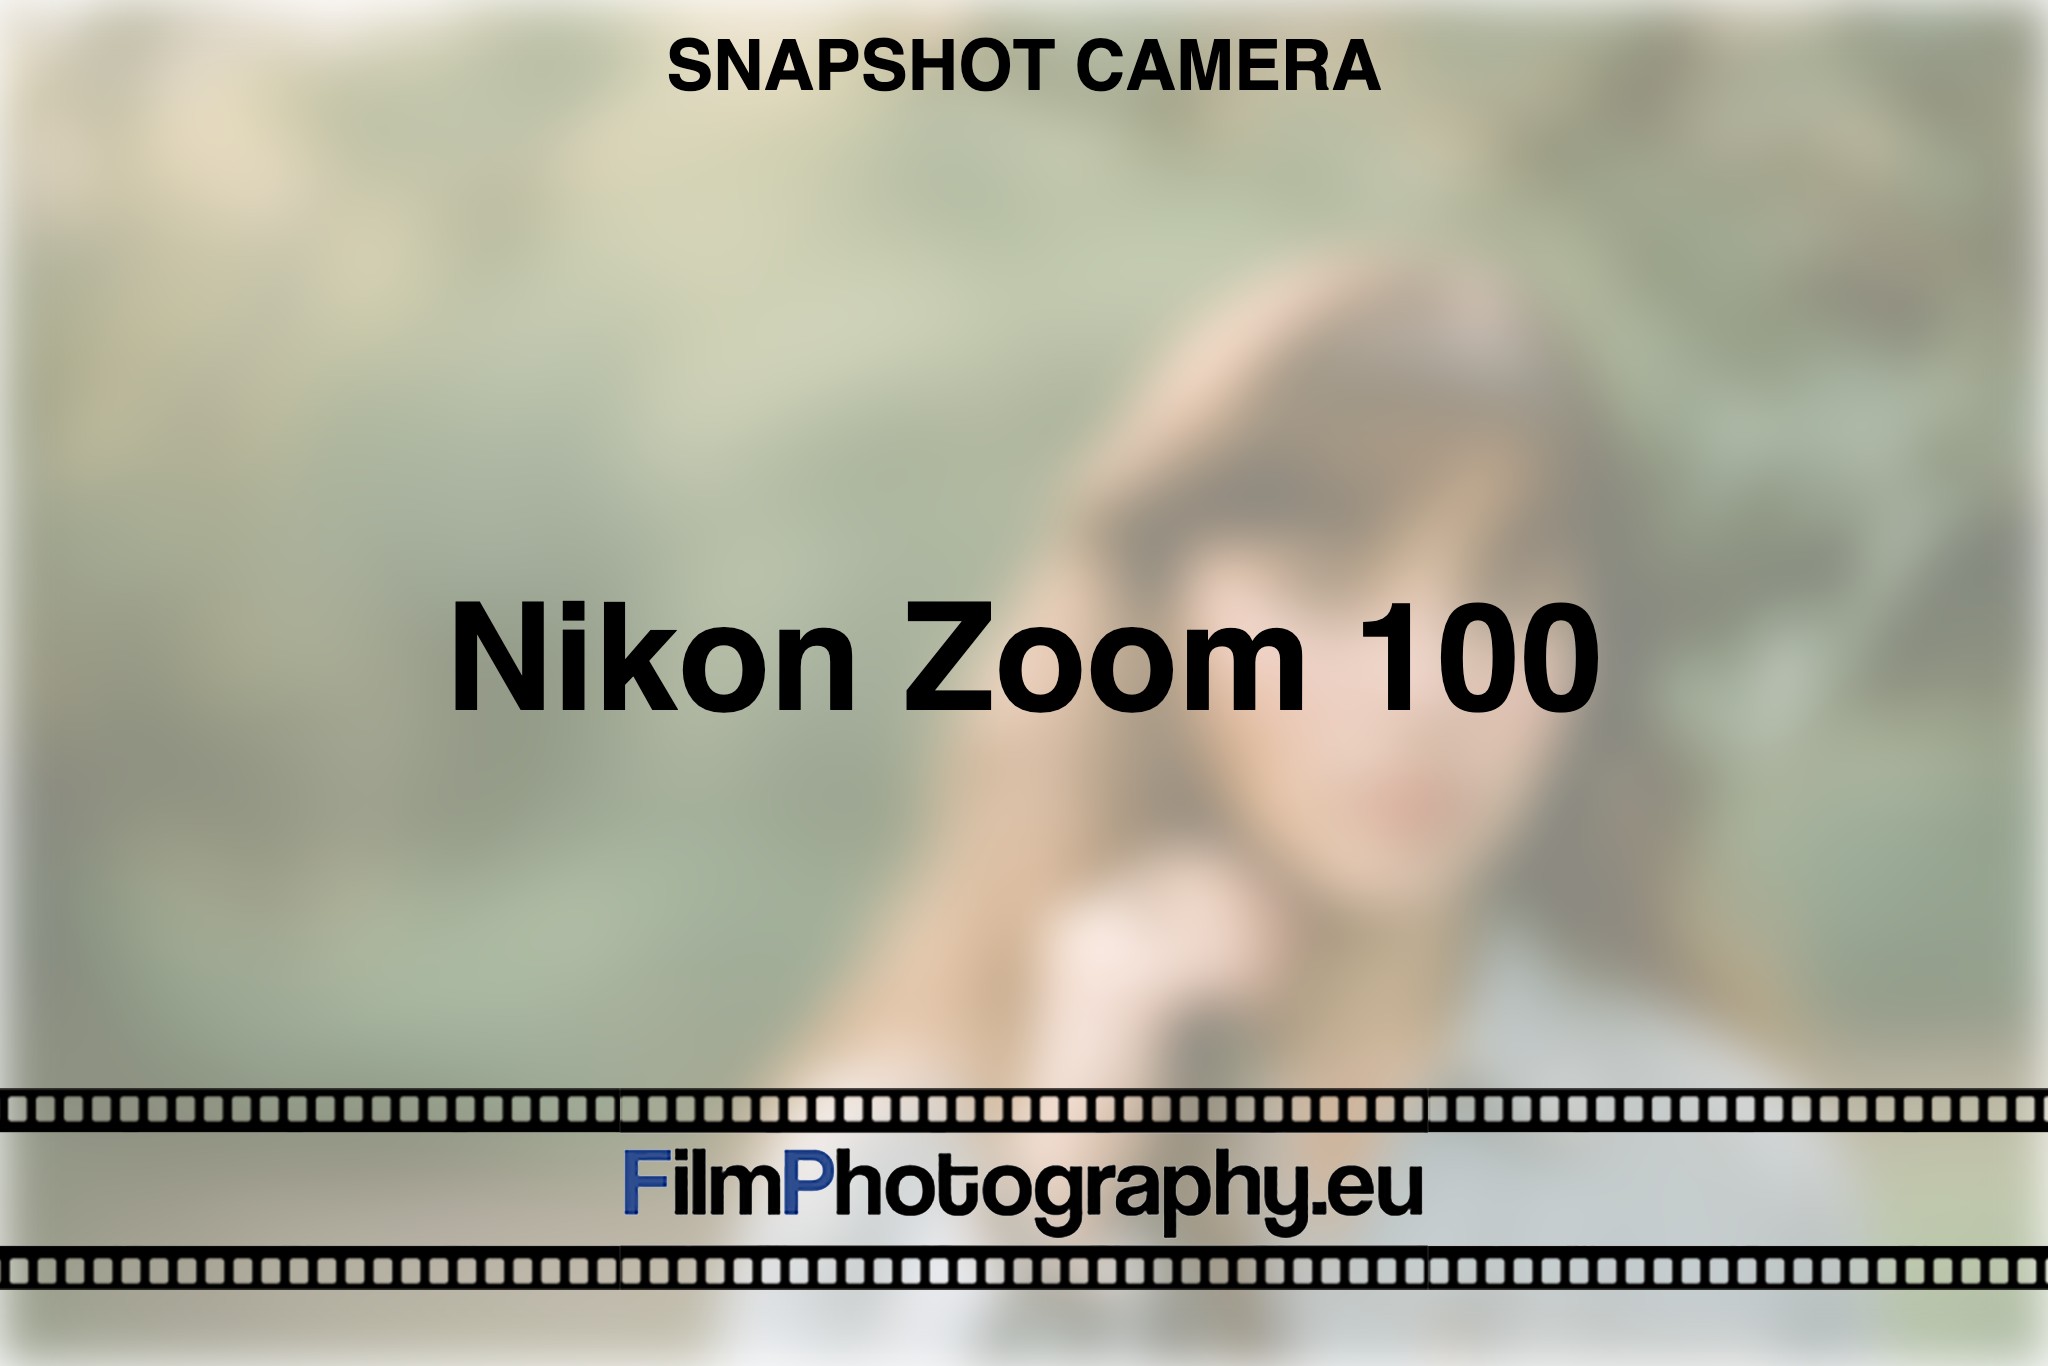 nikon-zoom-100-snapshot-camera-bnv